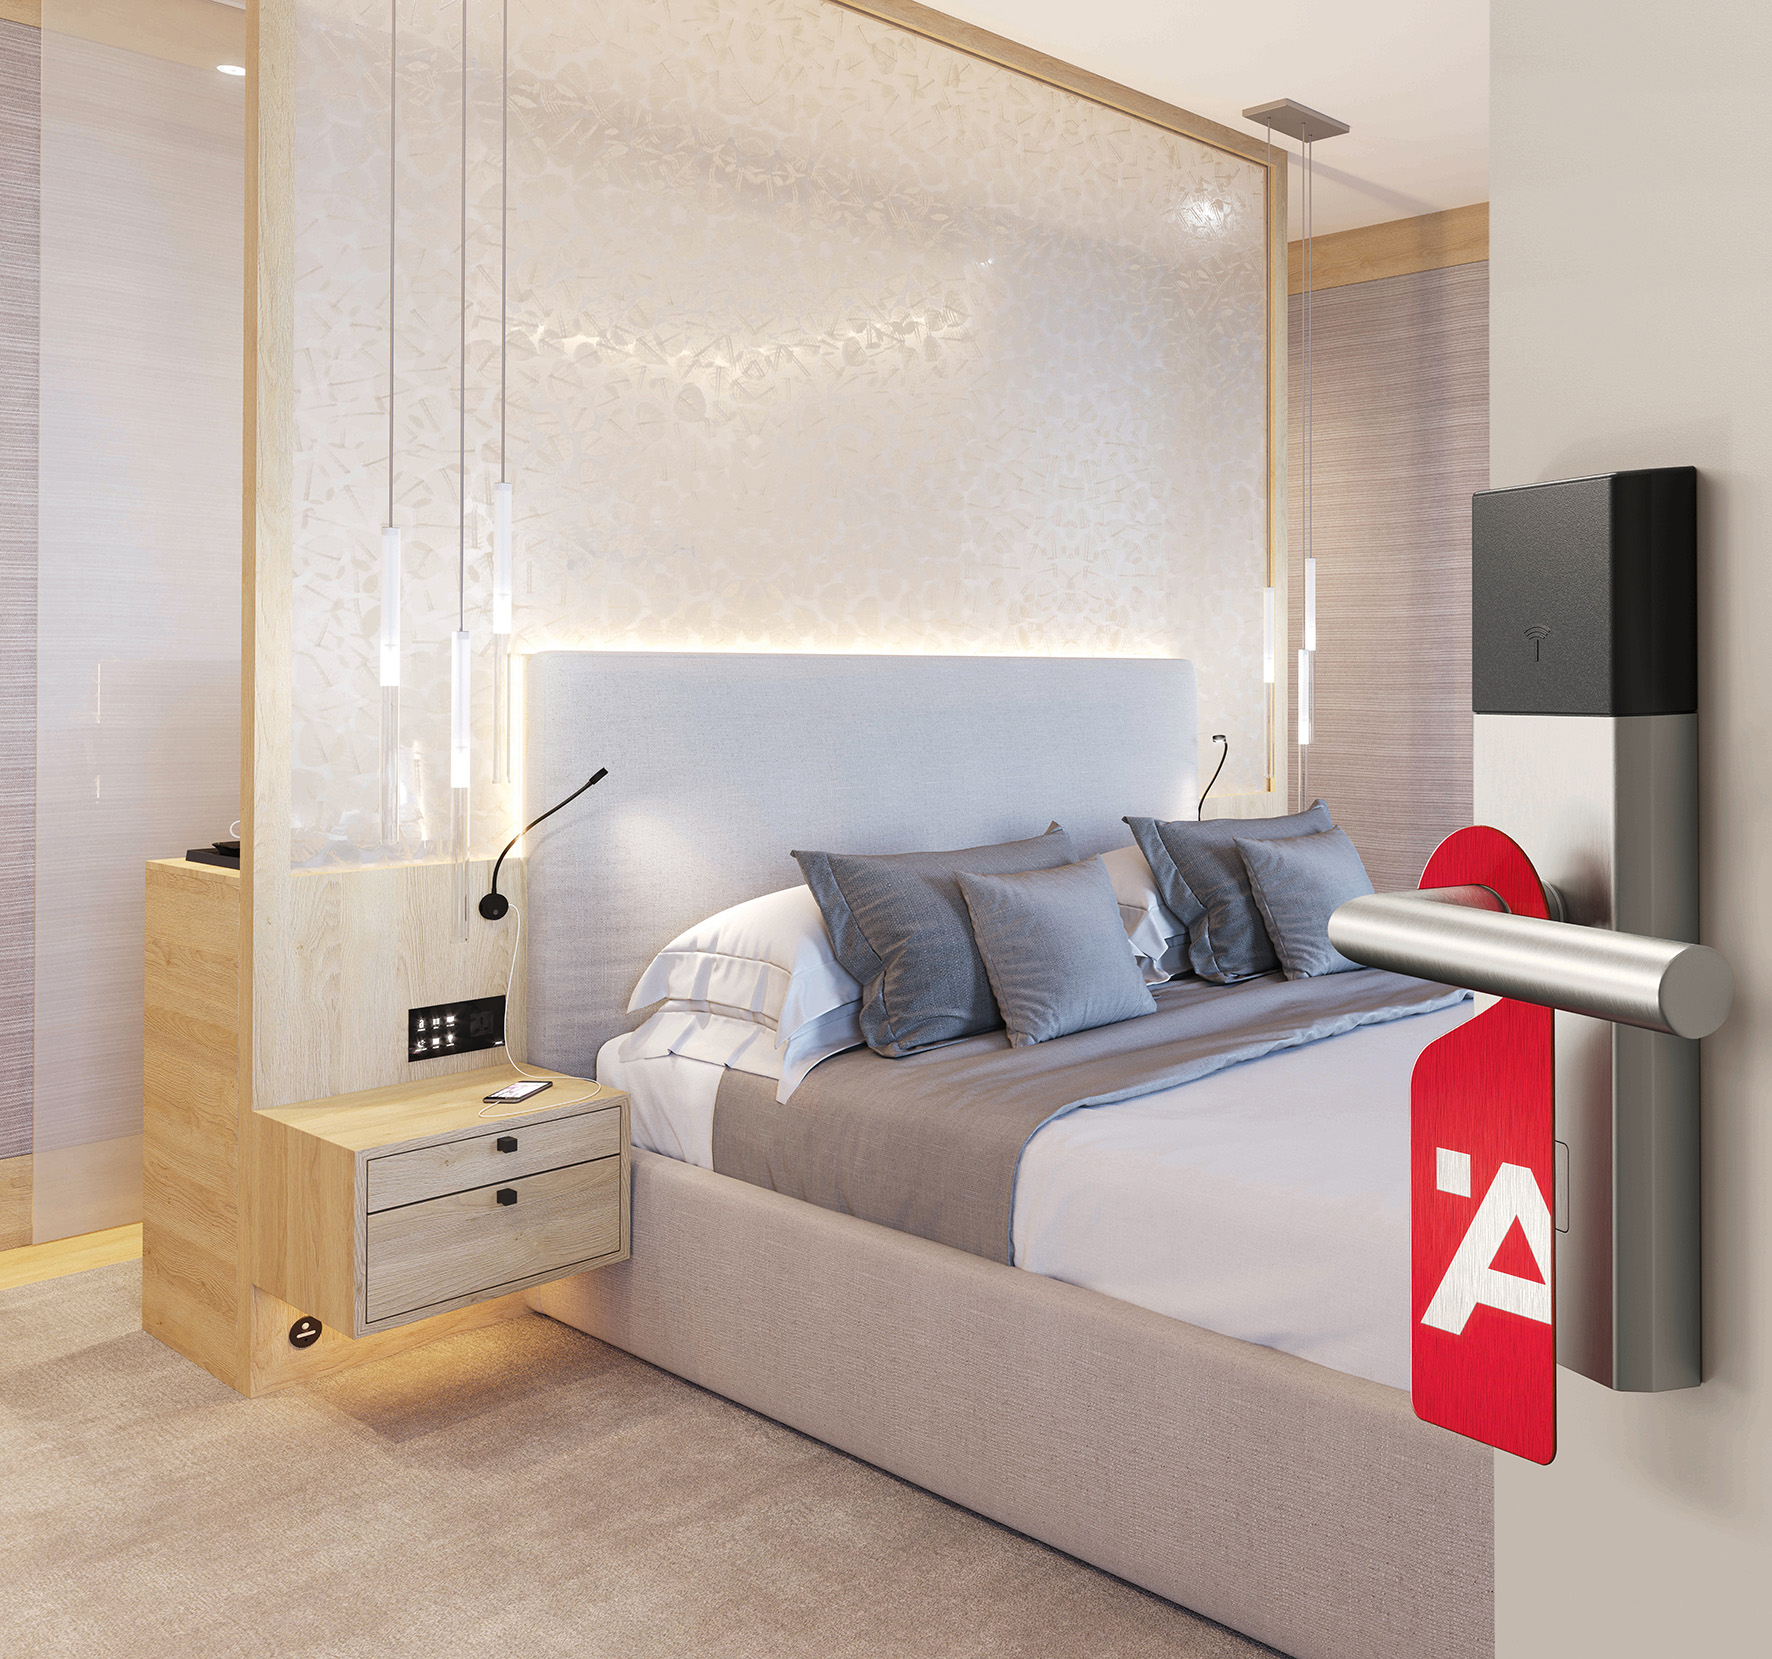 One Room, one Face – one Style. Häfele schafft mit seinem über 200 Produkte umfassenden, international verfügbaren Hotelsortiment optimale Voraussetzungen für die zielgruppengerechte Ausstattung von Hotelzimmern.